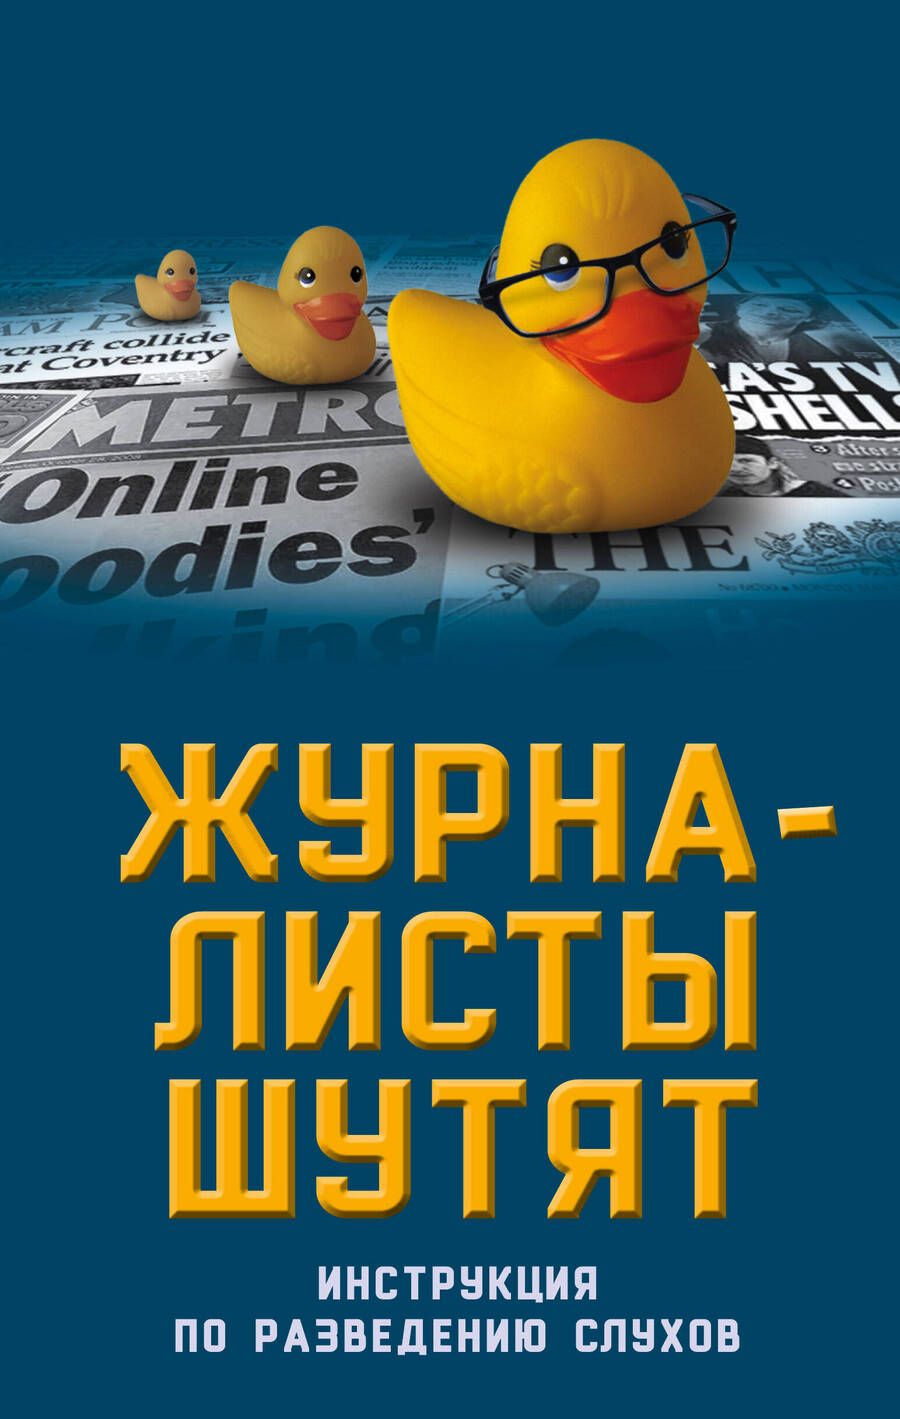 Обложка книги "Александр Бобров: Журналисты шутят. Инструкция по разведению слухов"